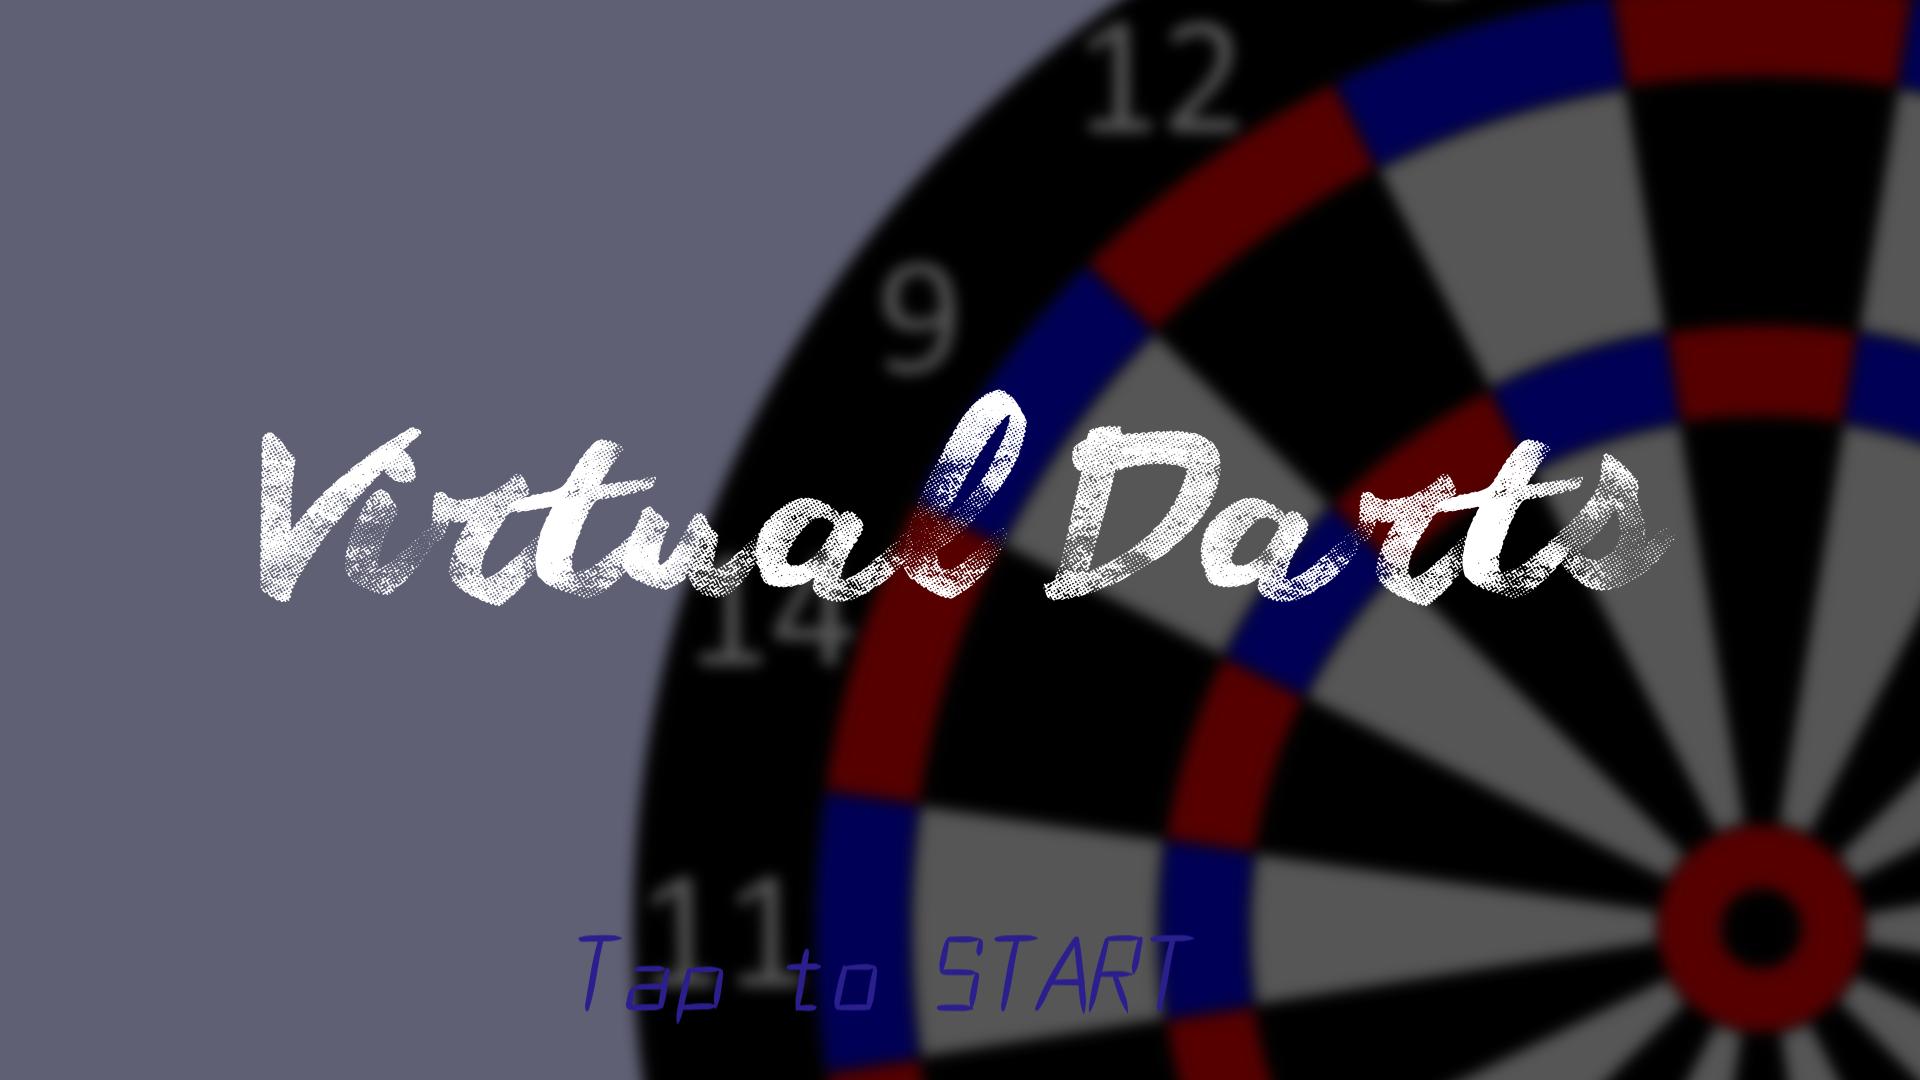 Virtual Darts 加速度センサーを用いた本格3dダーツ Para Android Apk Baixar